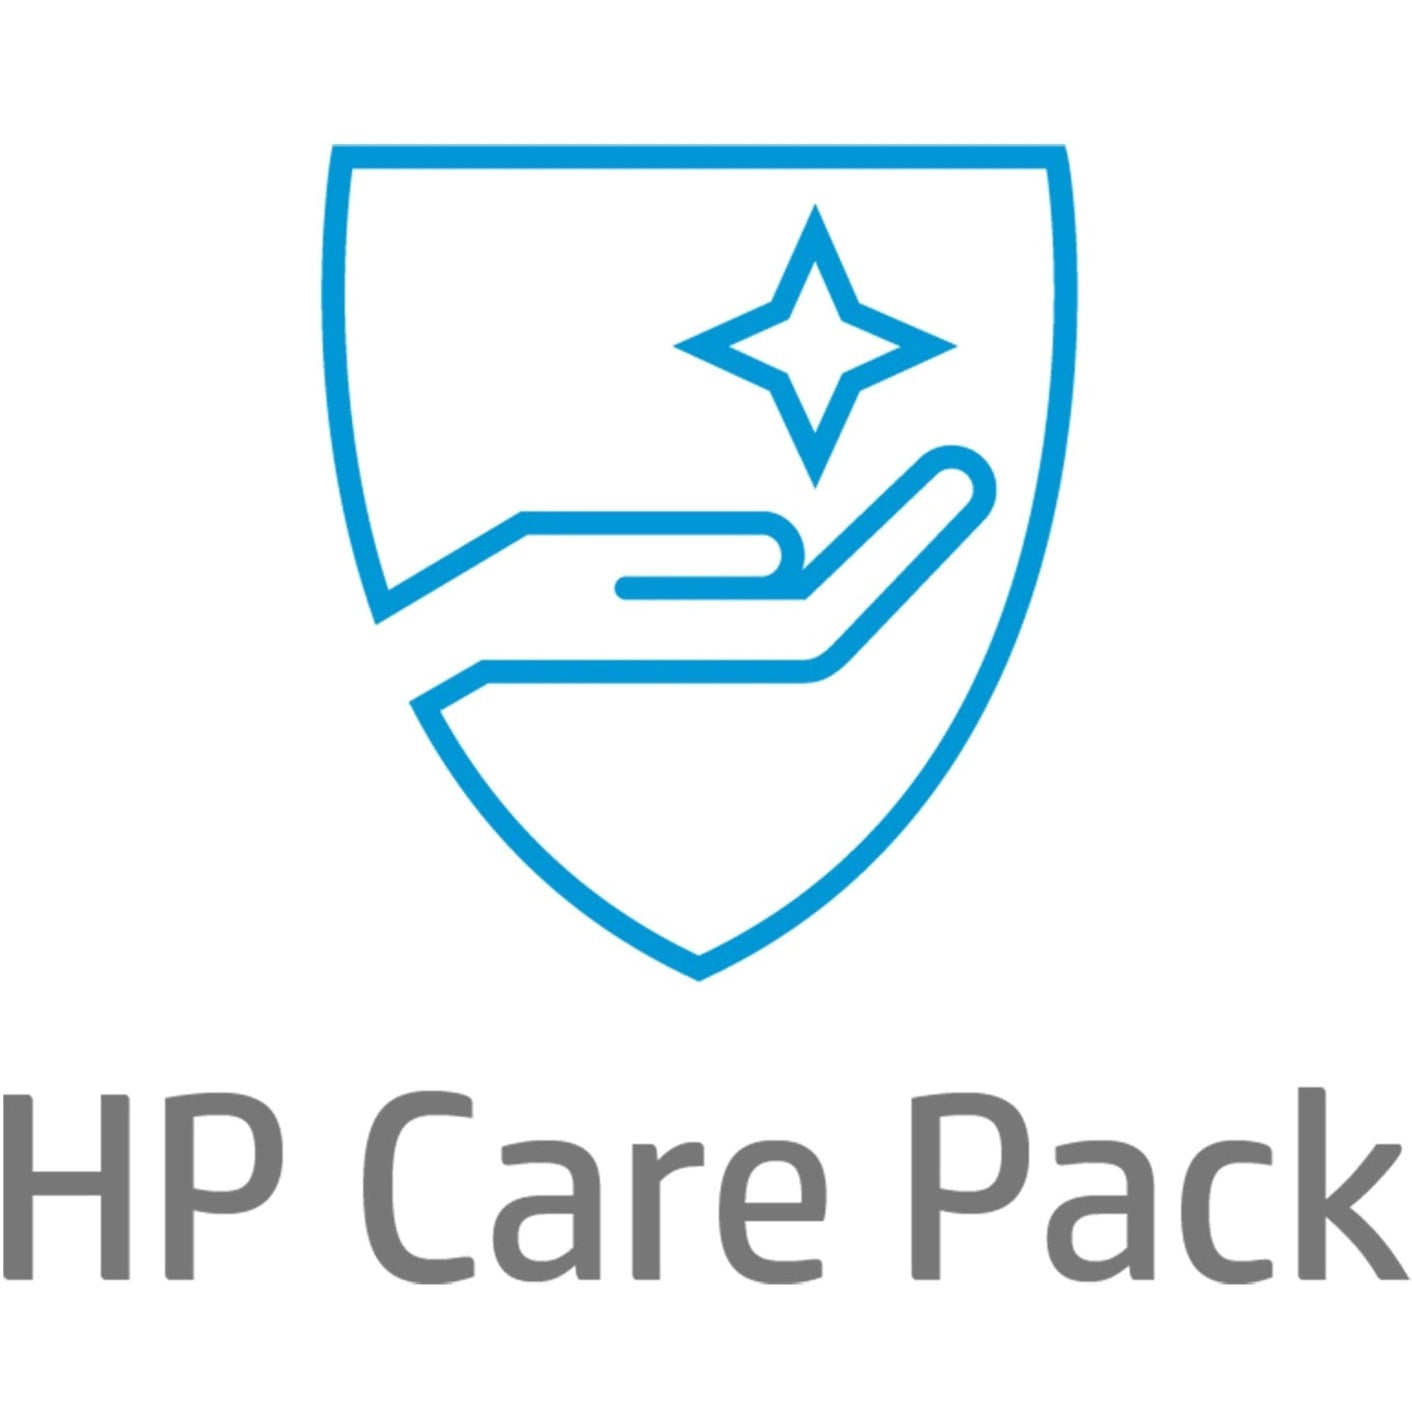 HP Care Pack - 3 Year - Service (UJ217E)